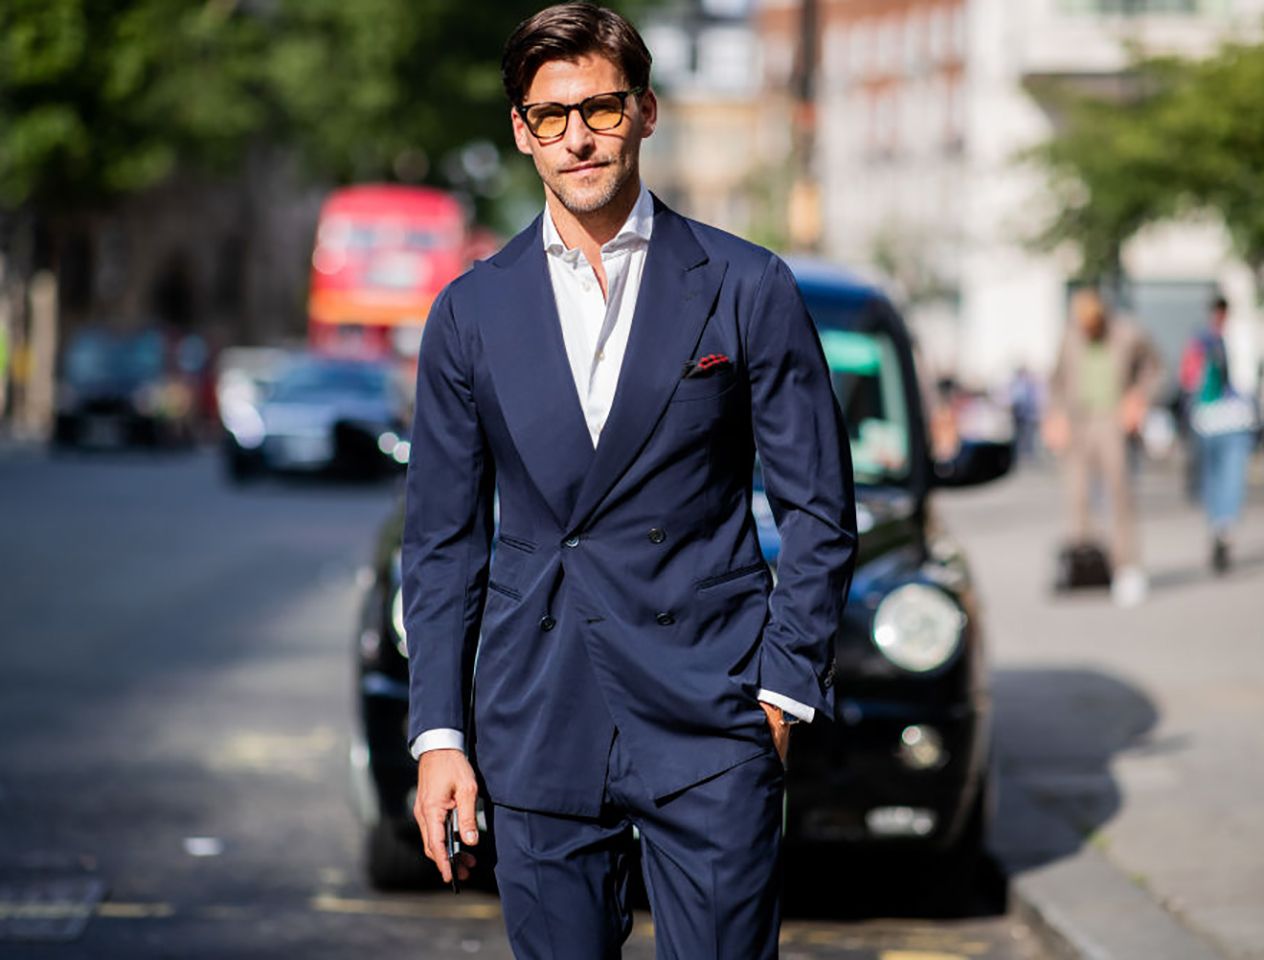 Street styler in a suit